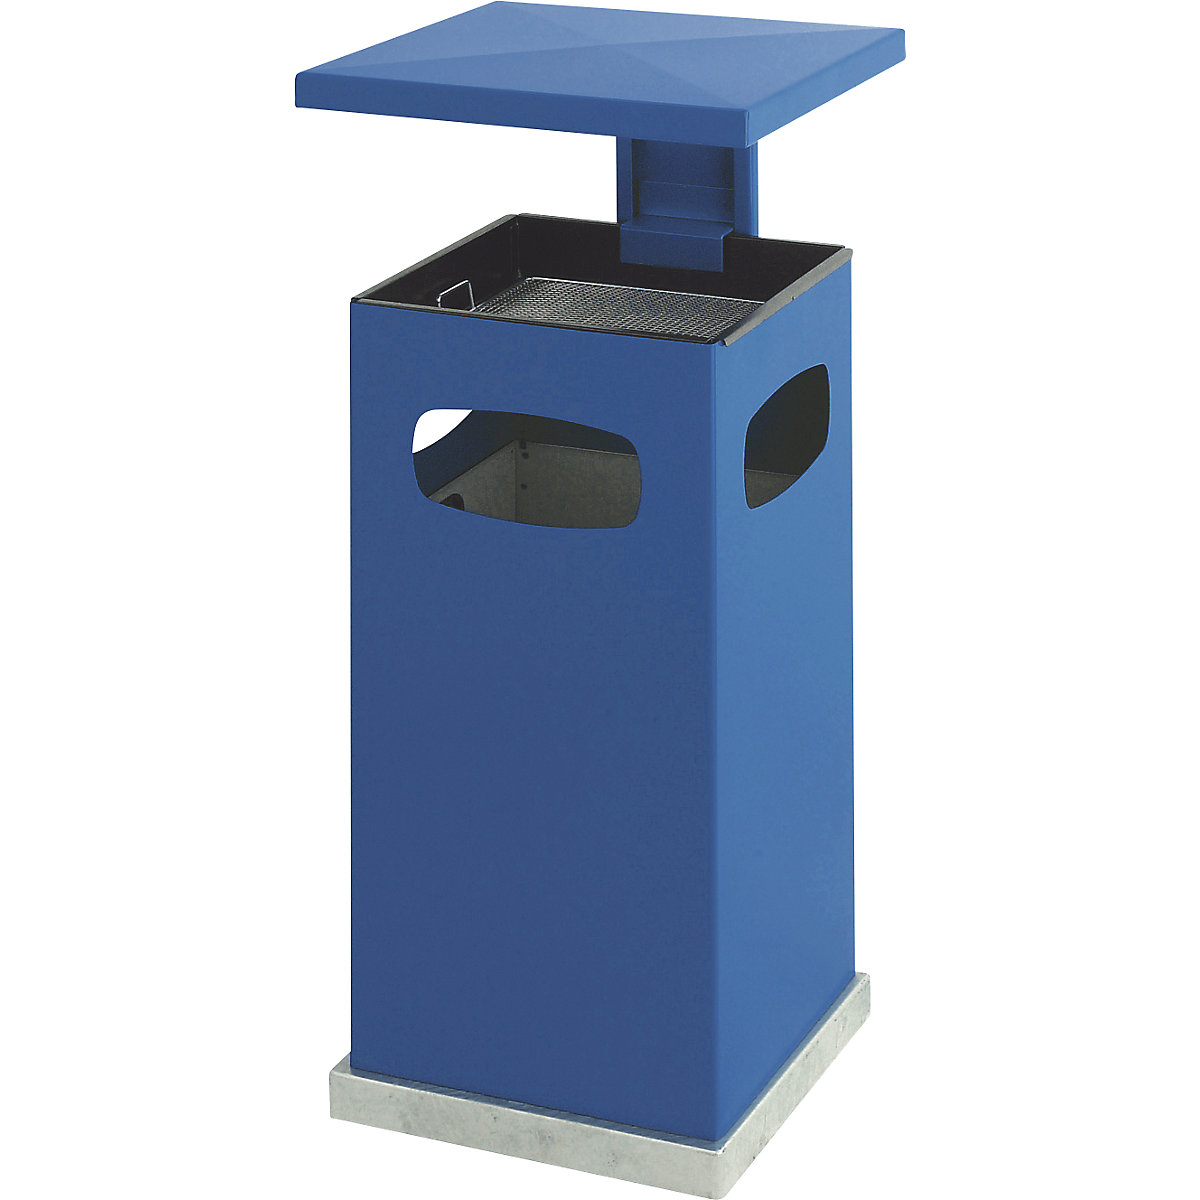 Pojemnik na odpady z wkładaną popielnicą i daszkiem, poj. 38 l, szer. x wys. x głęb. 395 x 910 x 395 mm, niebieski gencjanowy-5